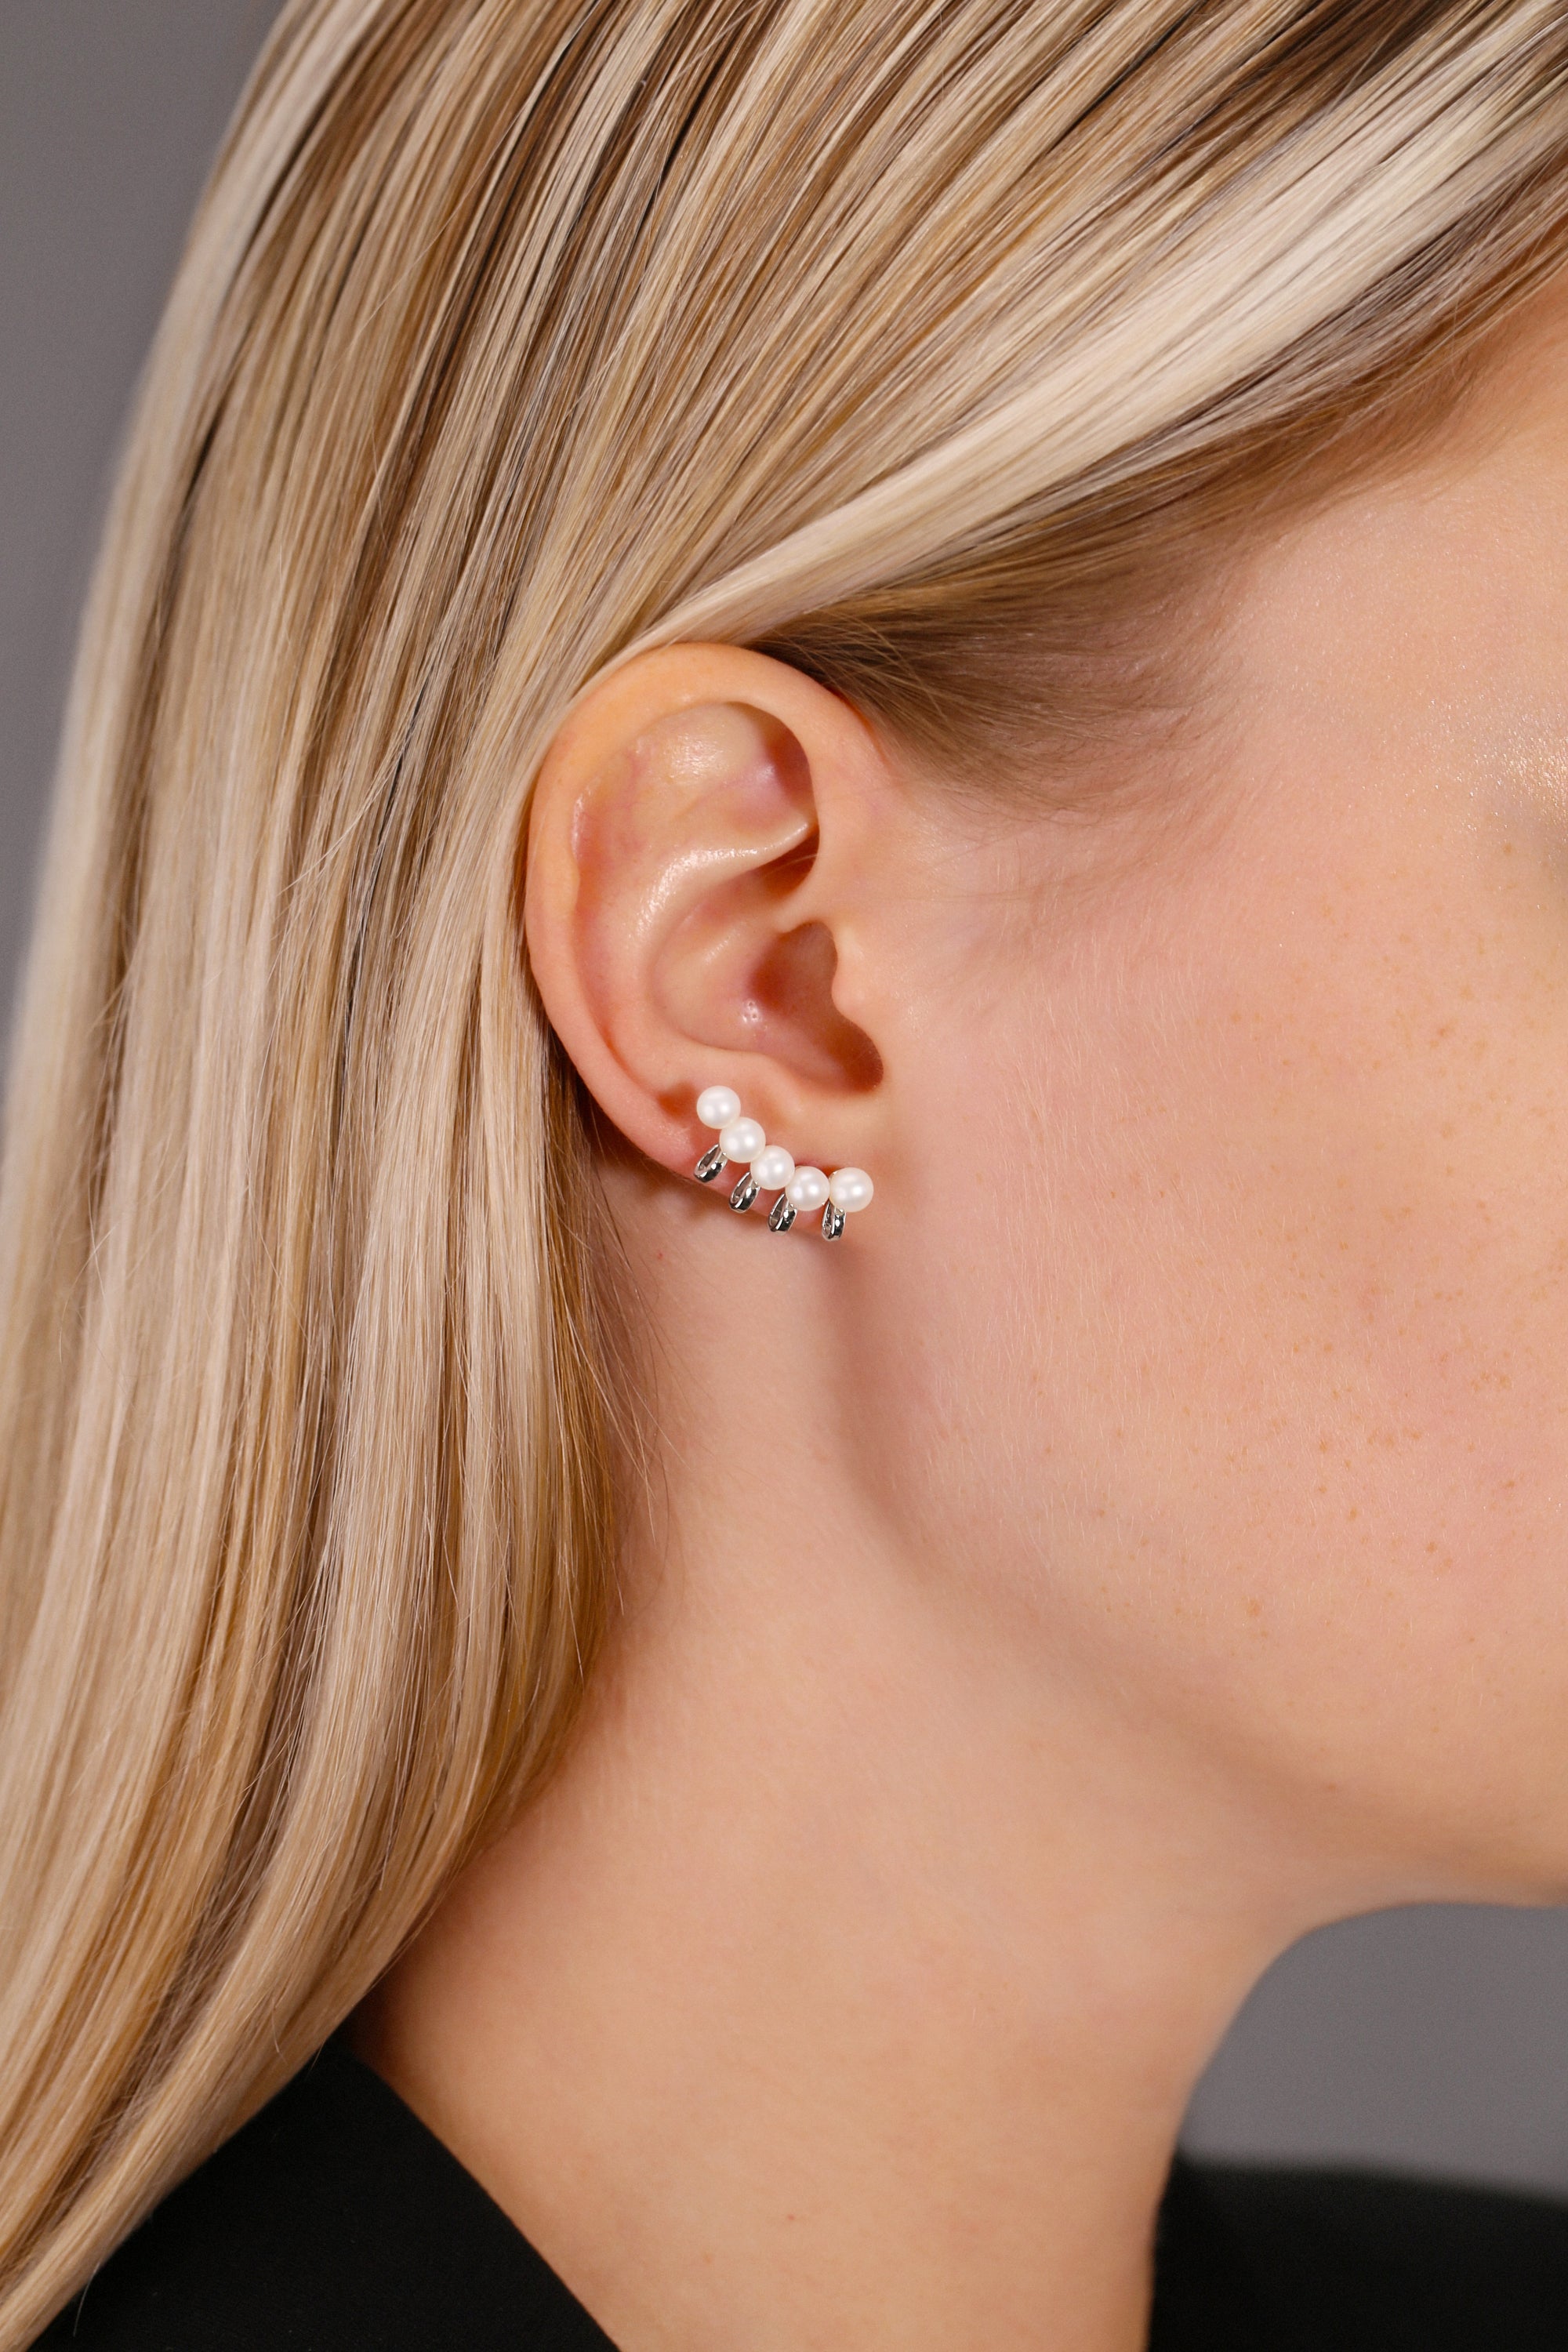 Pearl Ear Climber Stud Earrings in in Sterling Silver